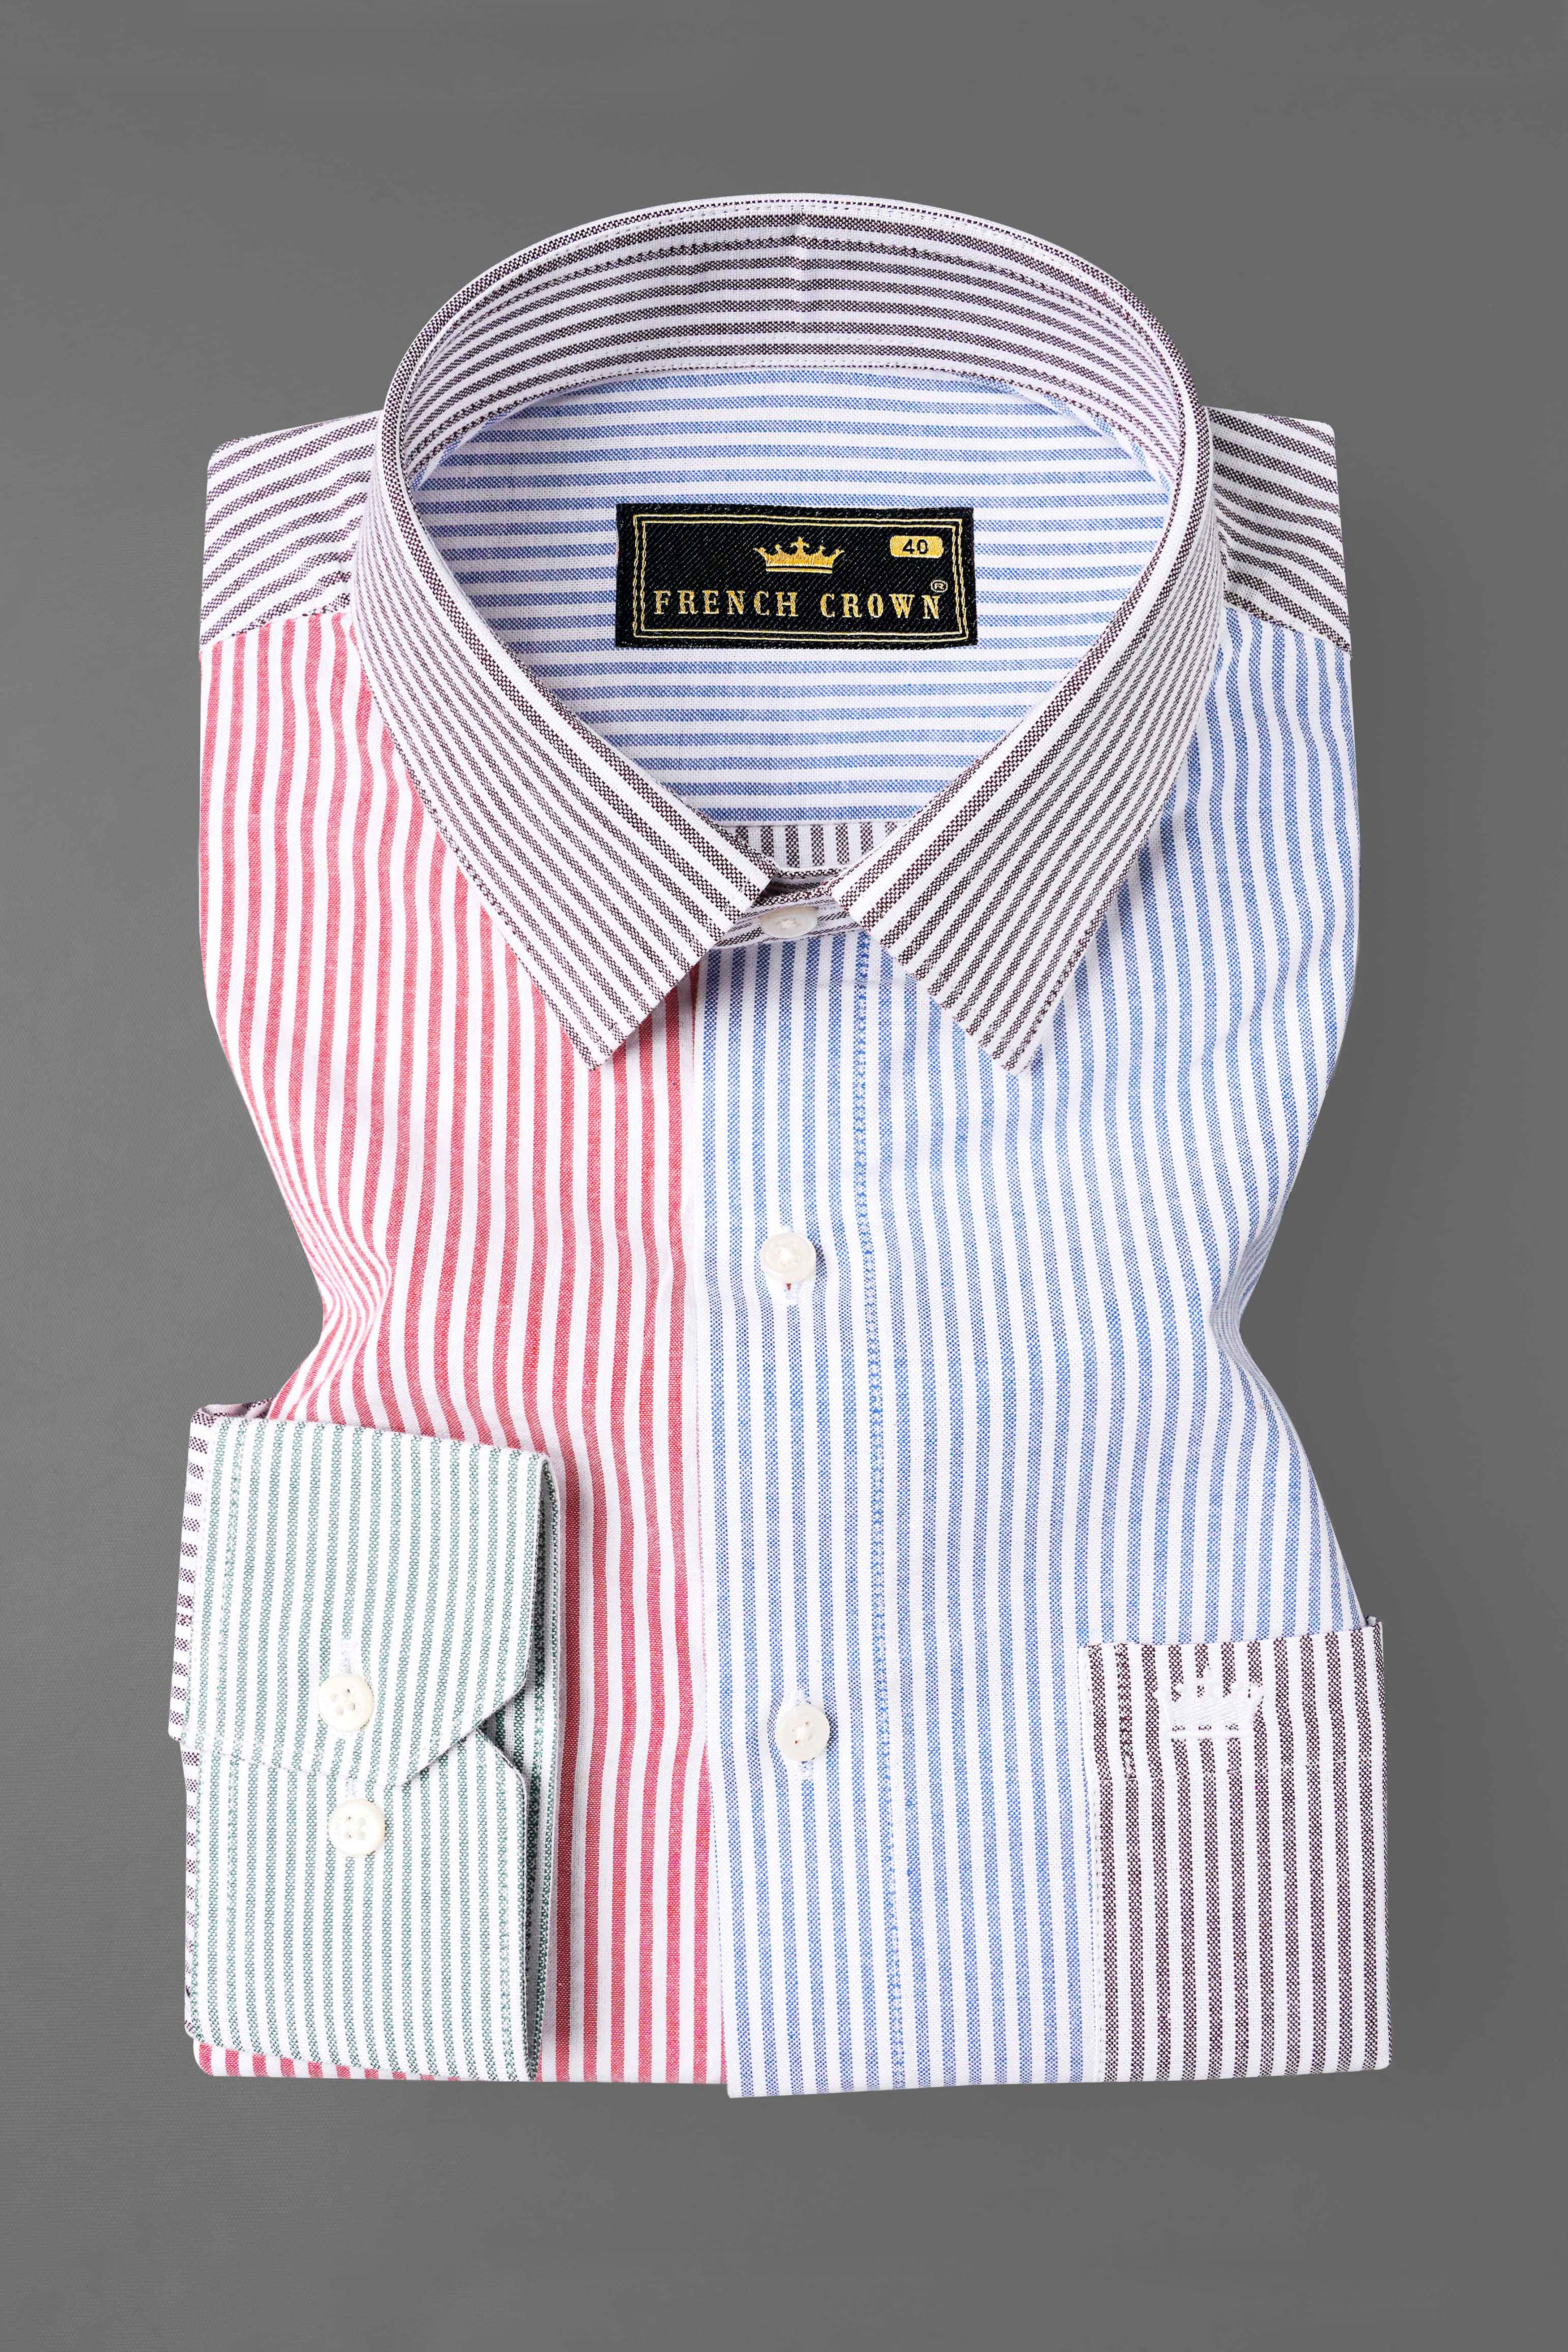 Cerulean with Glacier Blue Casual Stripes Premium Cotton Shirt For Men -  Rare Rabbit Shirts